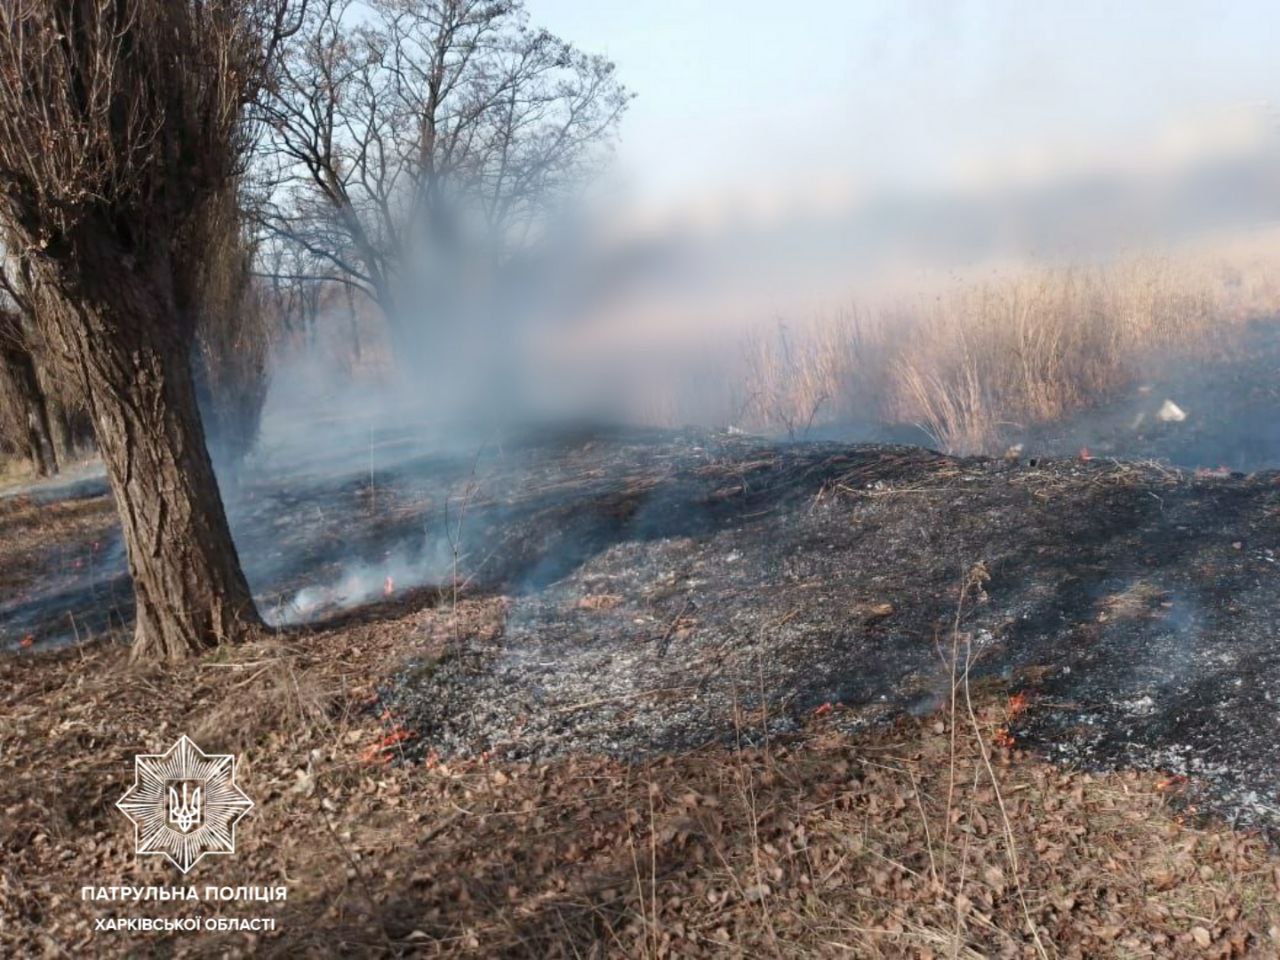 Пожар Харьков: Пойман поджигатель, устроивший обширное возгорание сухостоя 